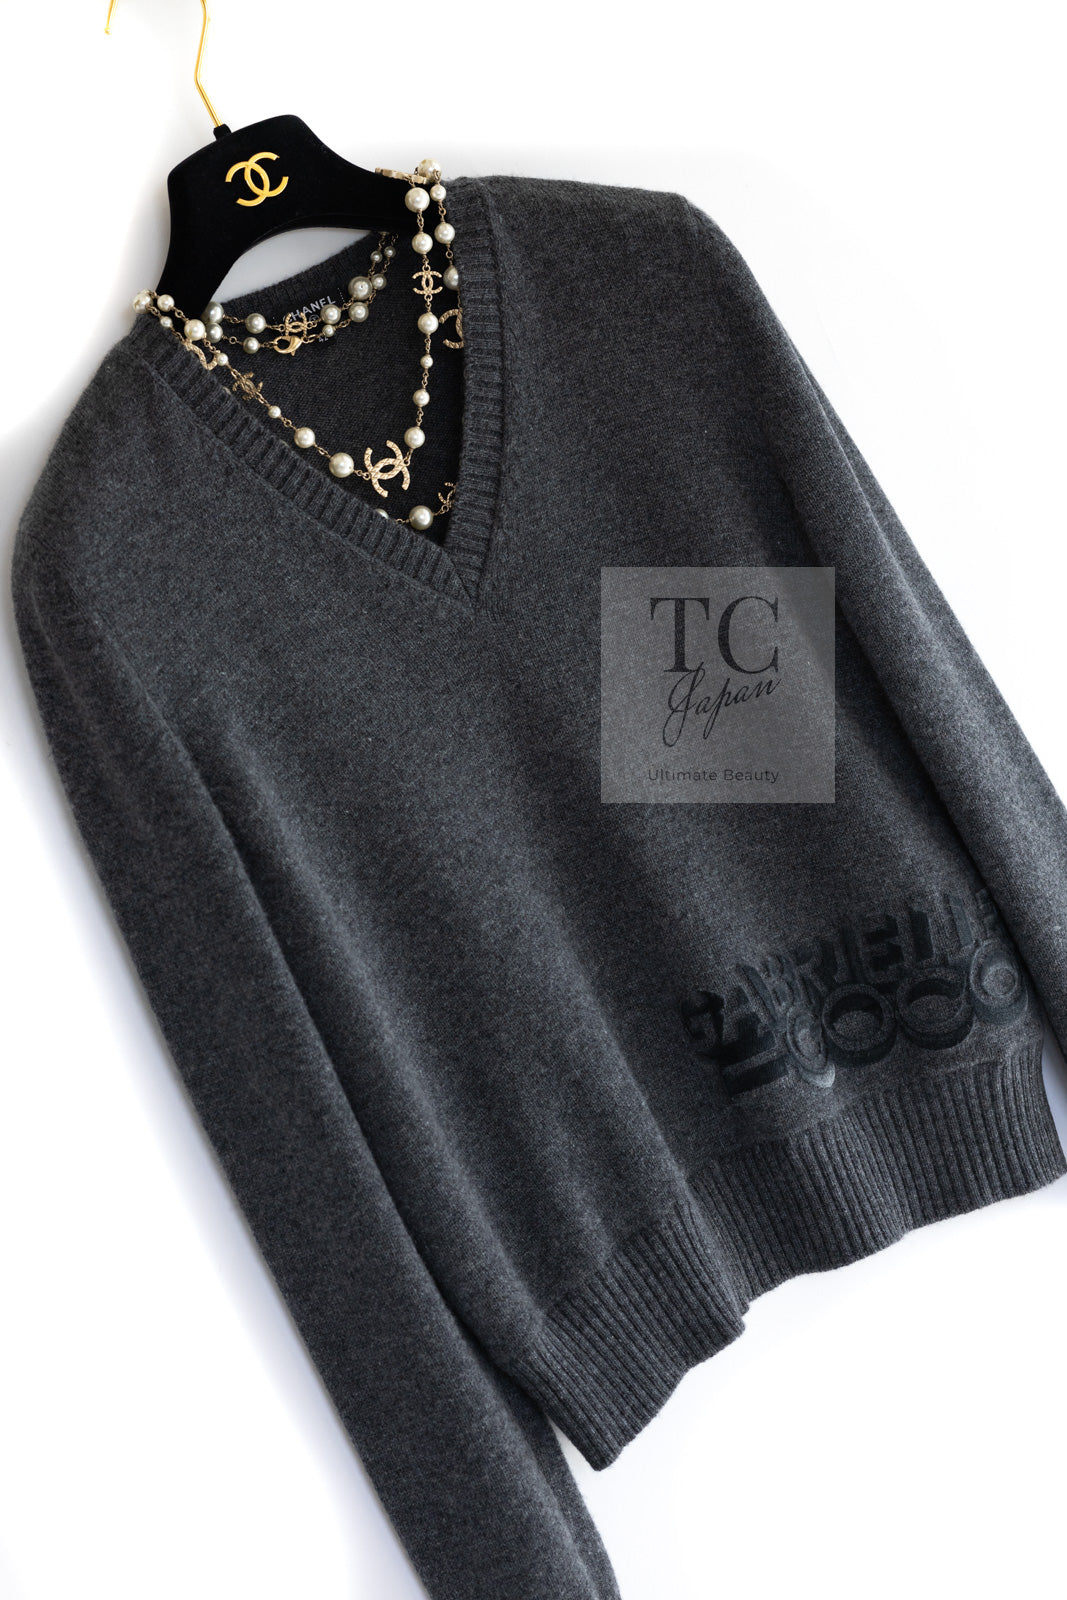 シャネル セーター トップス CHANEL Sweater Tops【正規品・専門店 